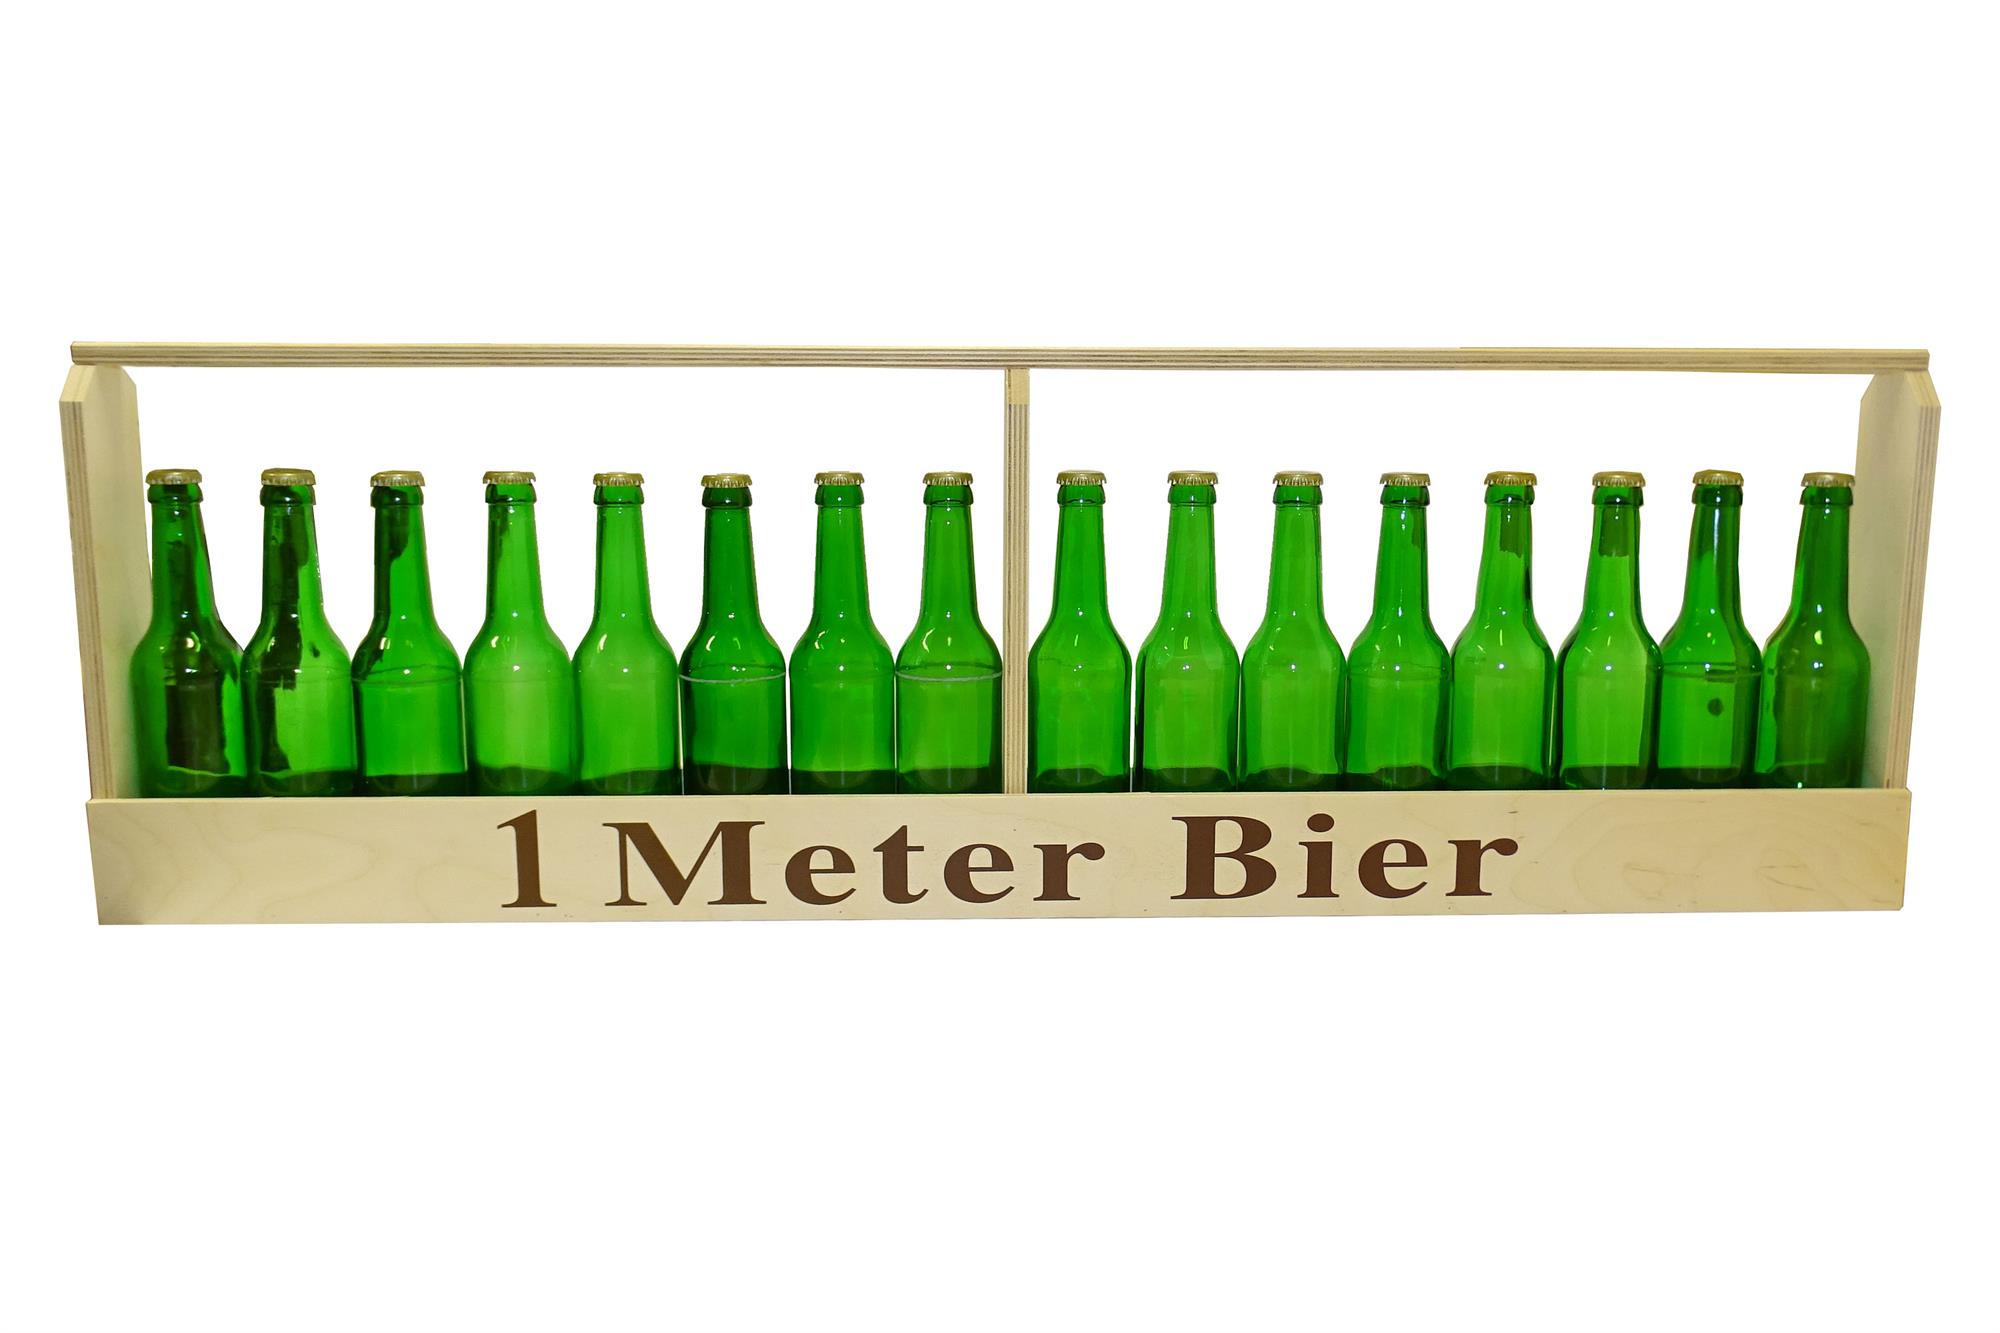 de:1 Meter Bier | für 0,33 Liter | Bierflaschen!-_::_-!en:1 meter beer | for 0.33 liters | beer bottles!-_::_-!